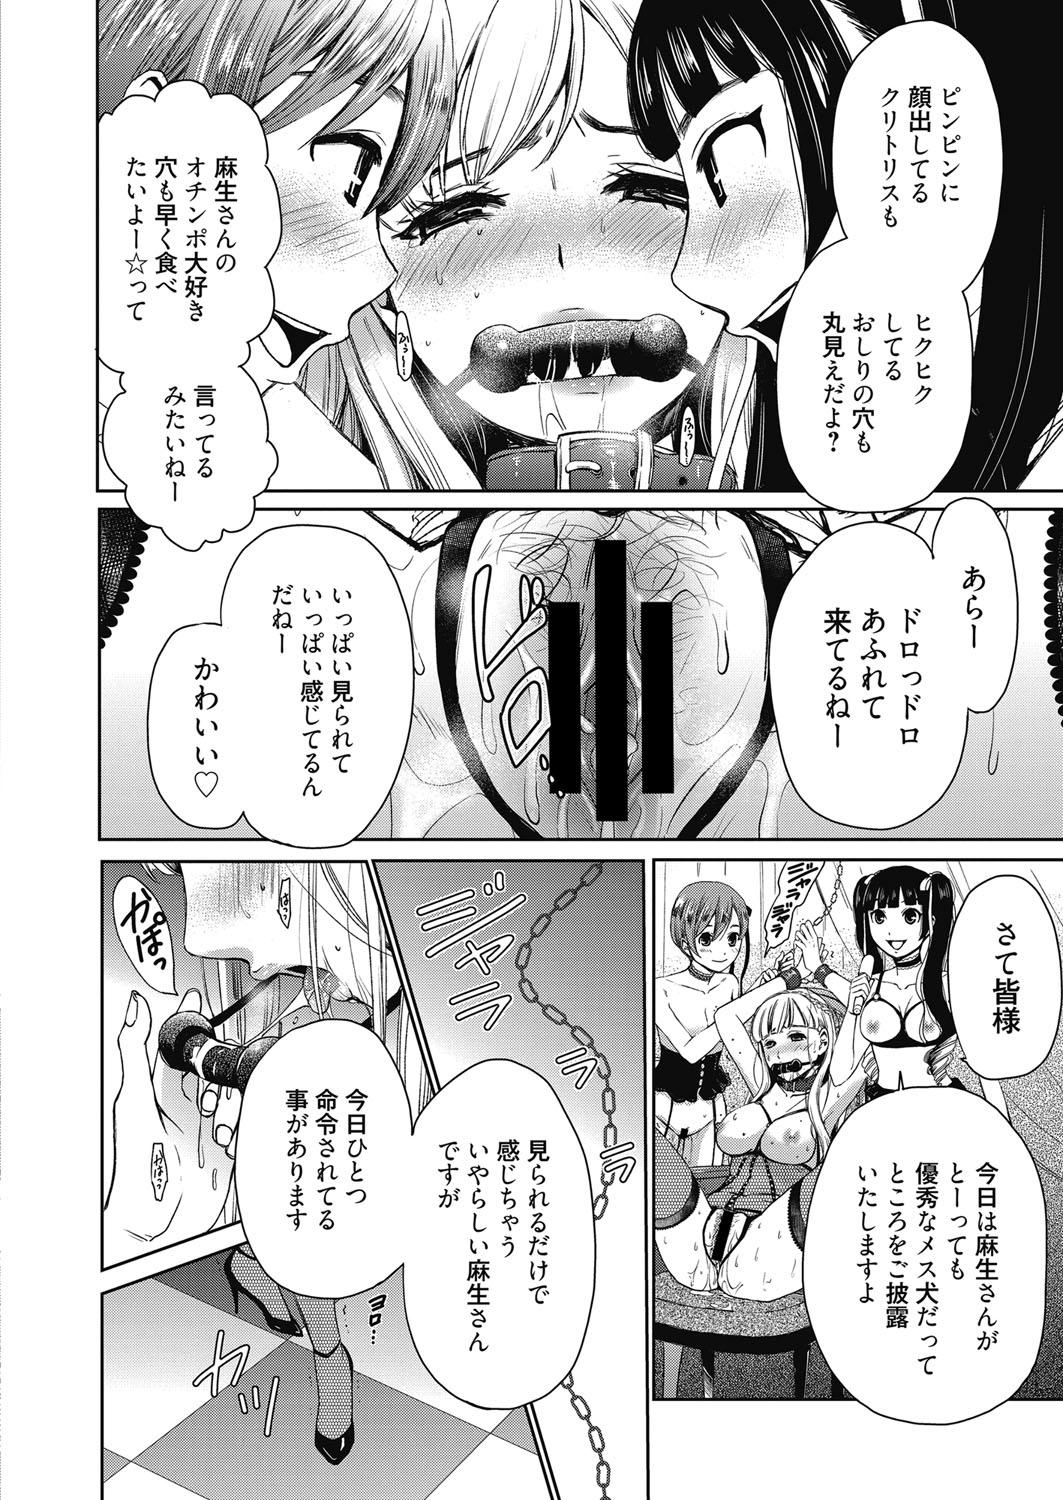 Amazing Web Manga Bangaichi Vol. 23 Groupsex - Page 11